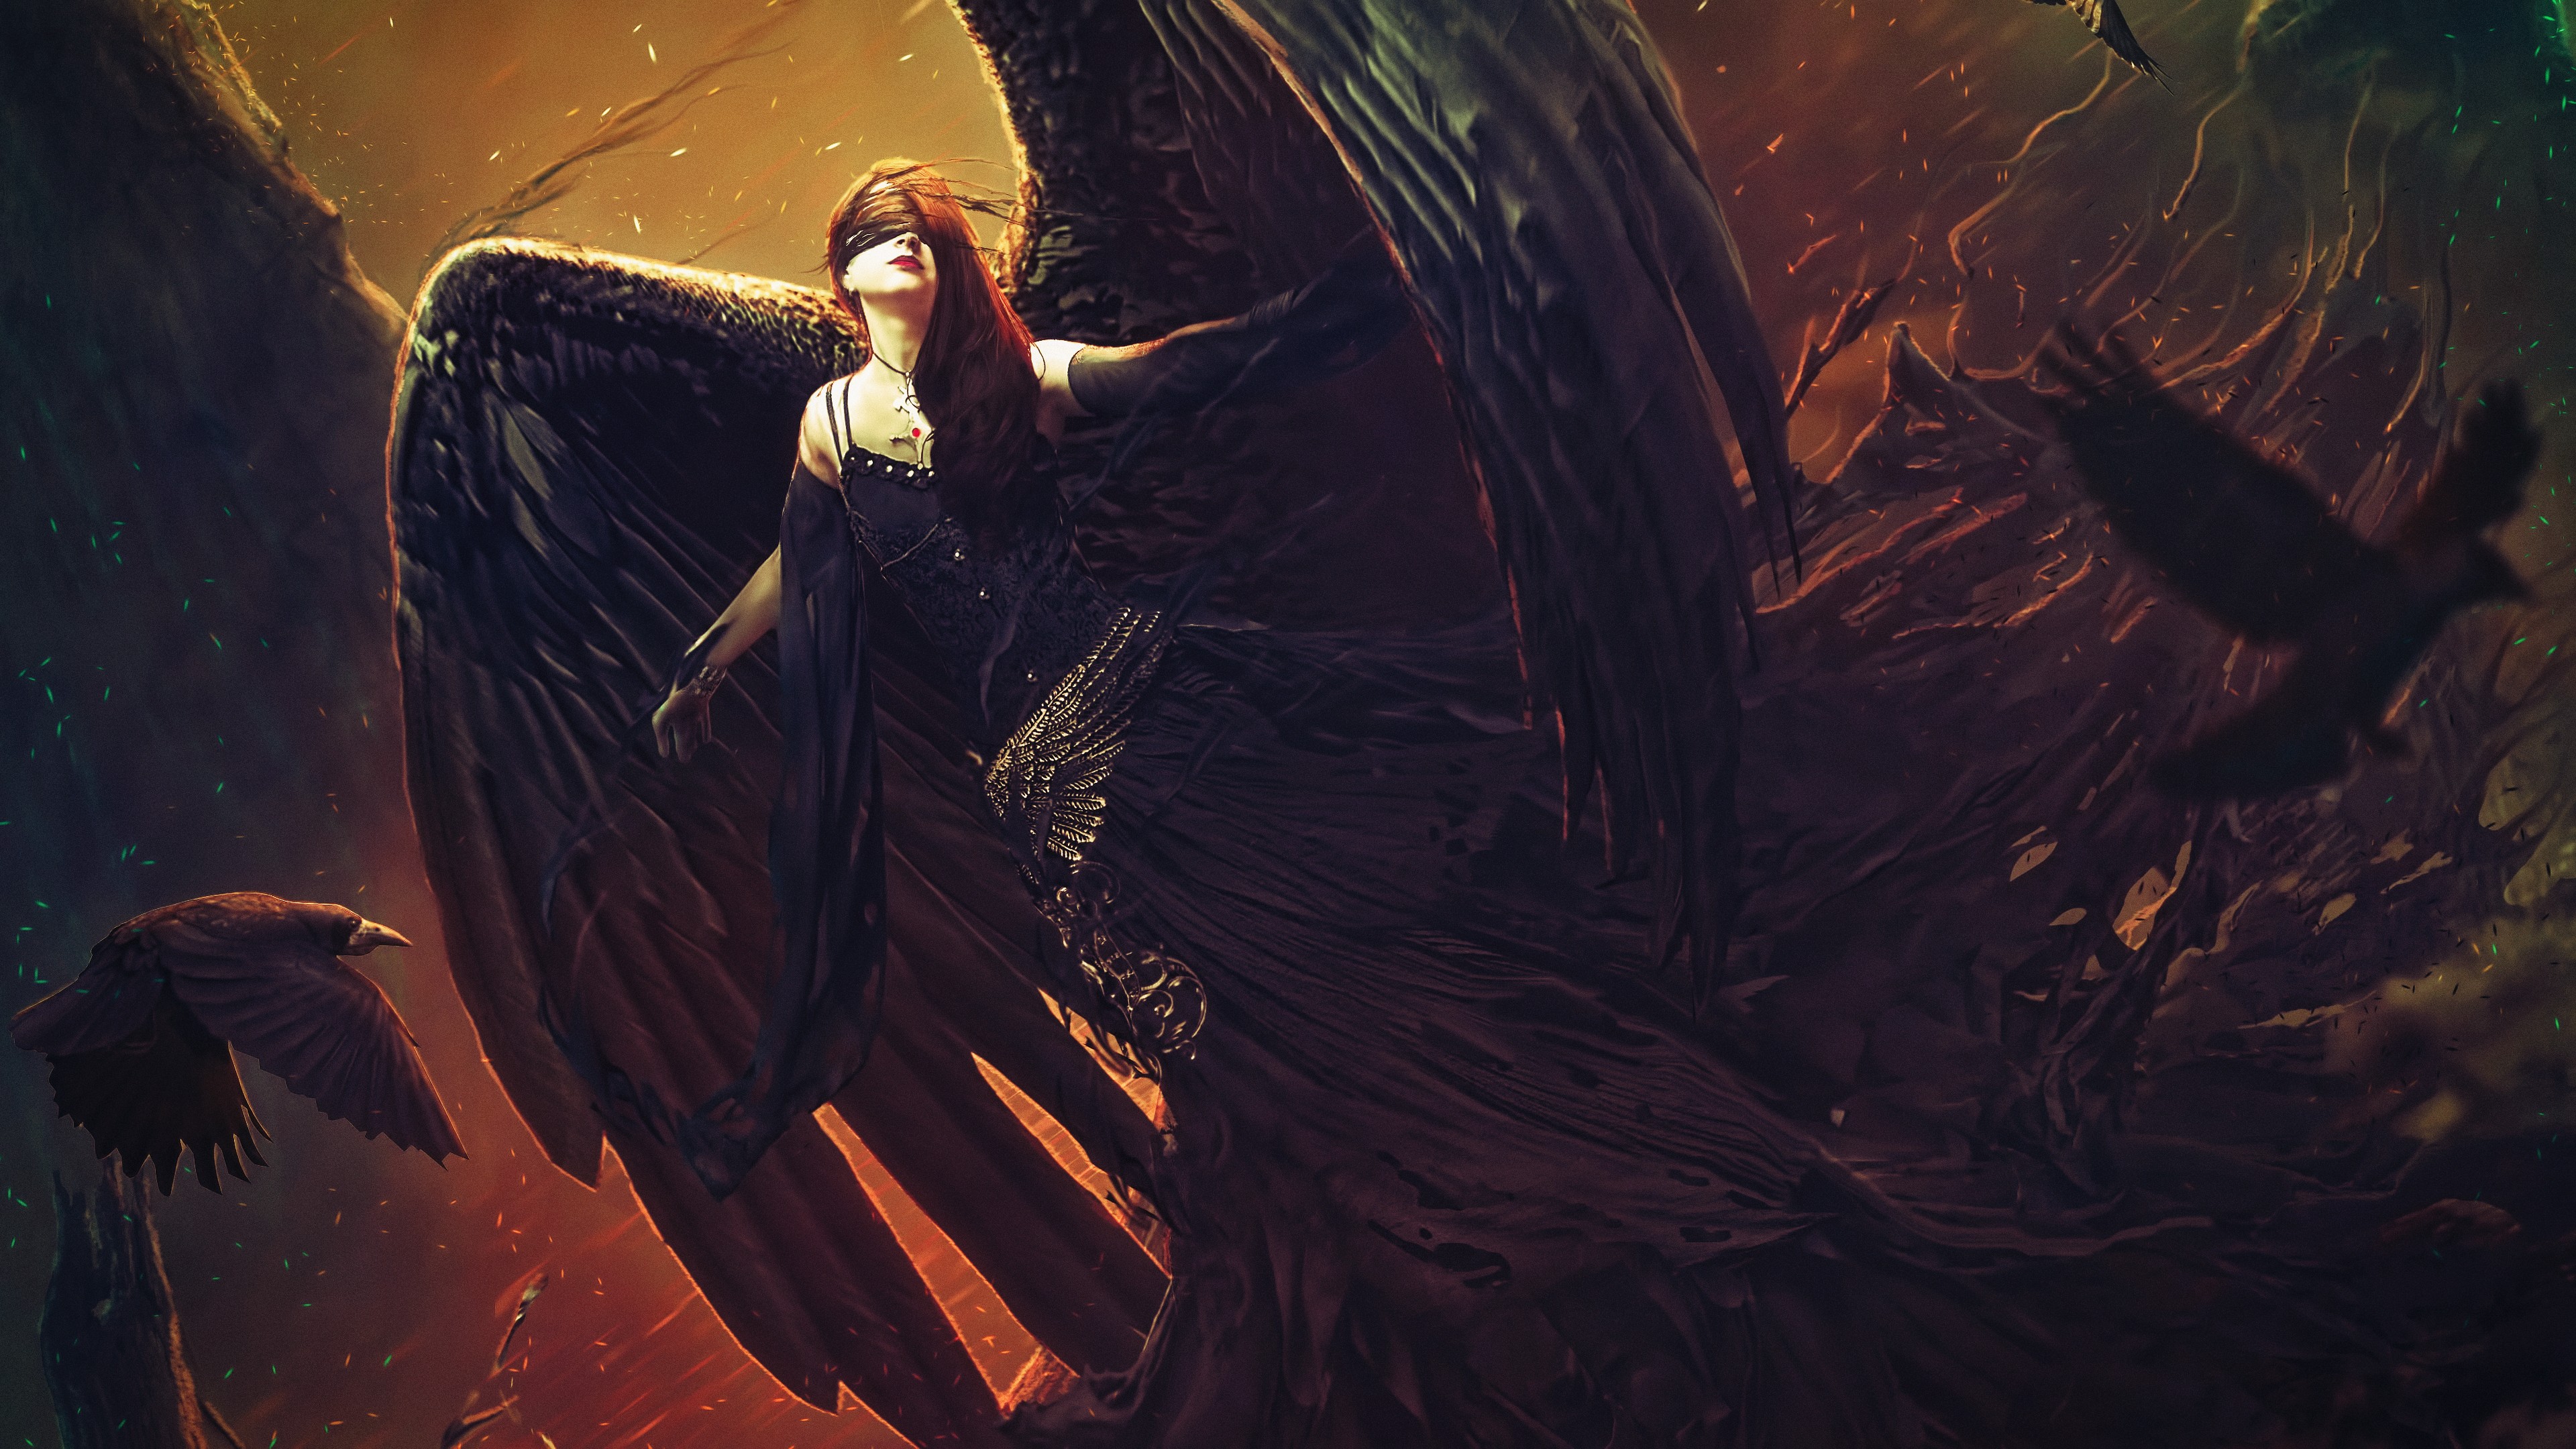 Dark Angel by Zacarias Guterres